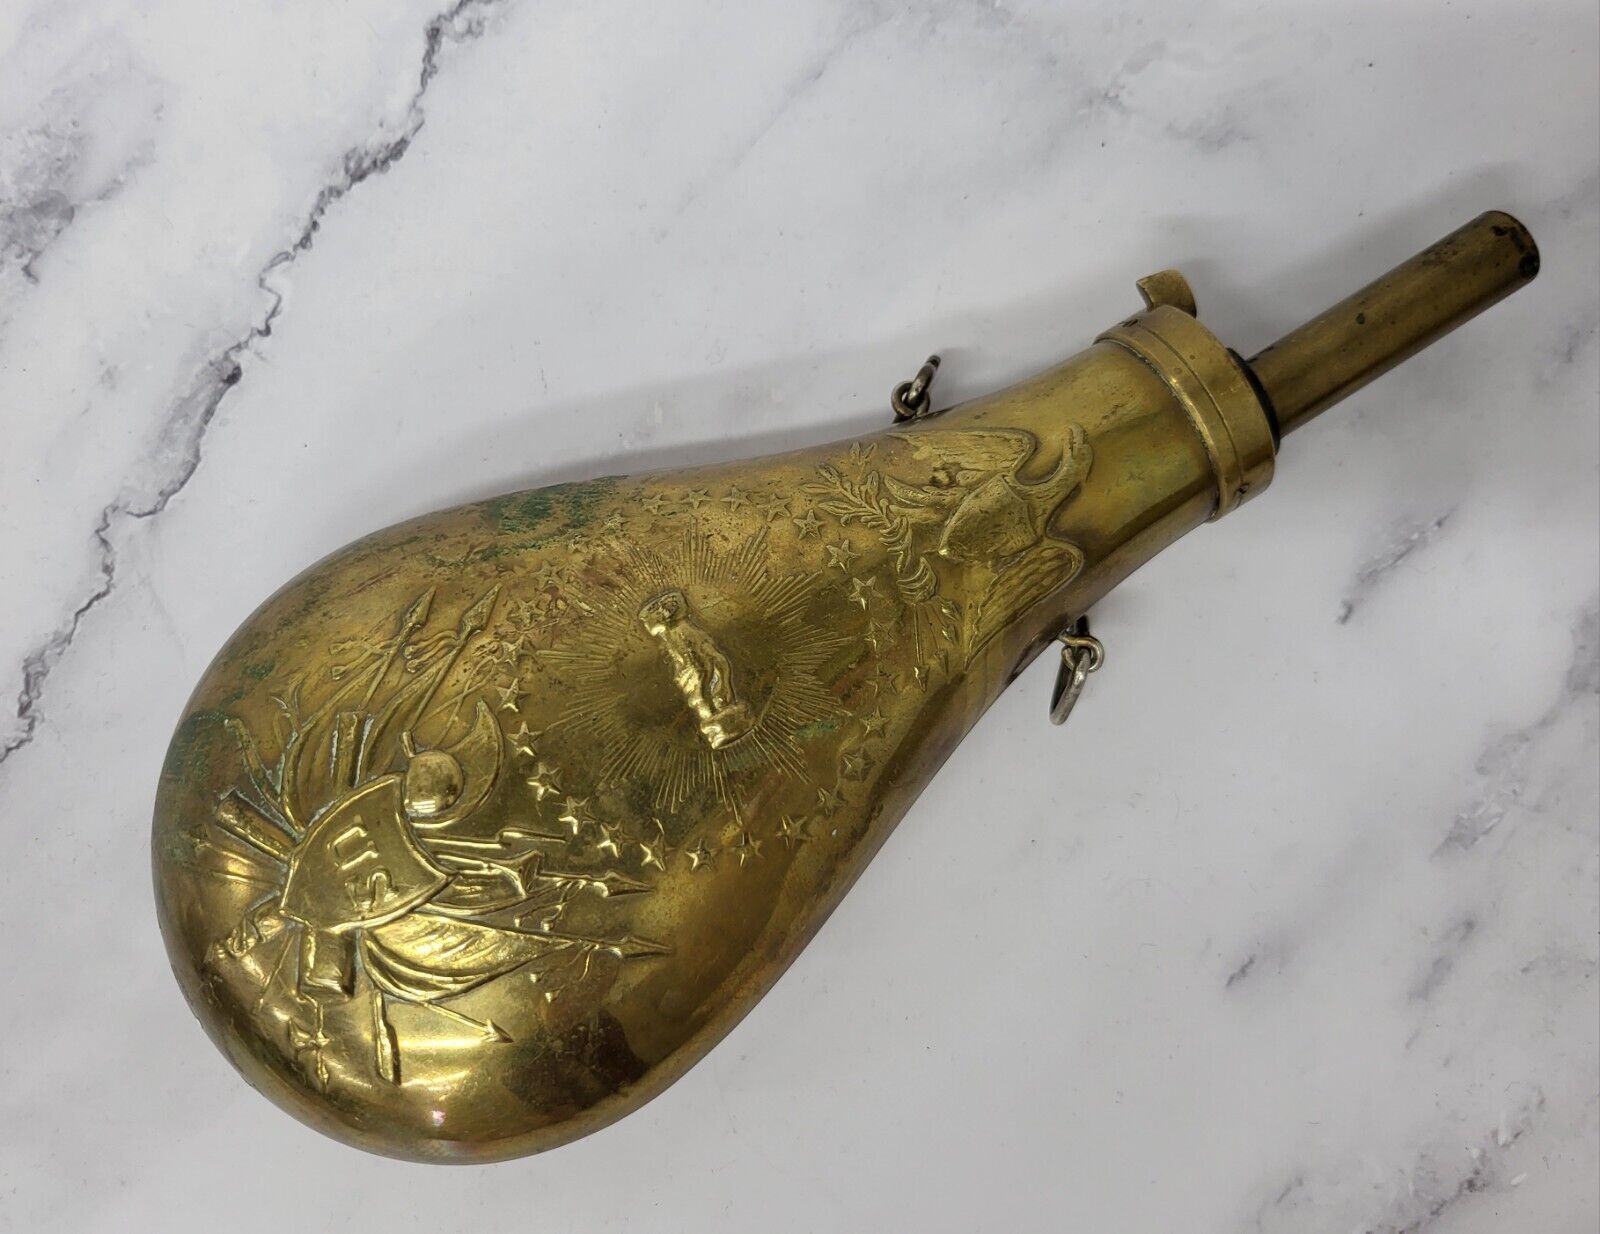 Brass Gun Powder Flask - Civil War Reproduction